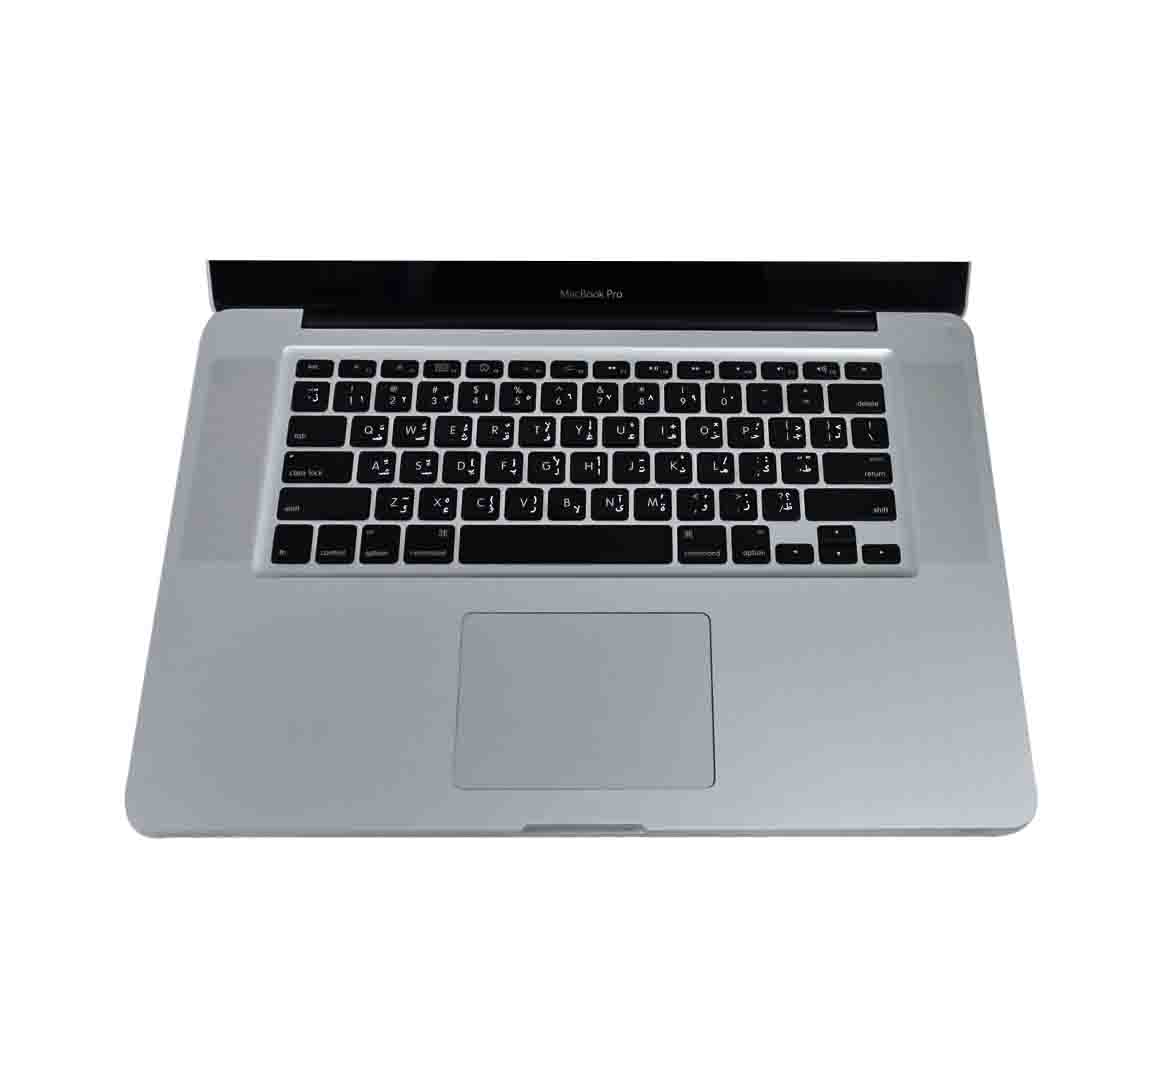 Apple MacBook Pro A1286 Laptop, Intel Core i5-1st Gen, 4GB RAM 